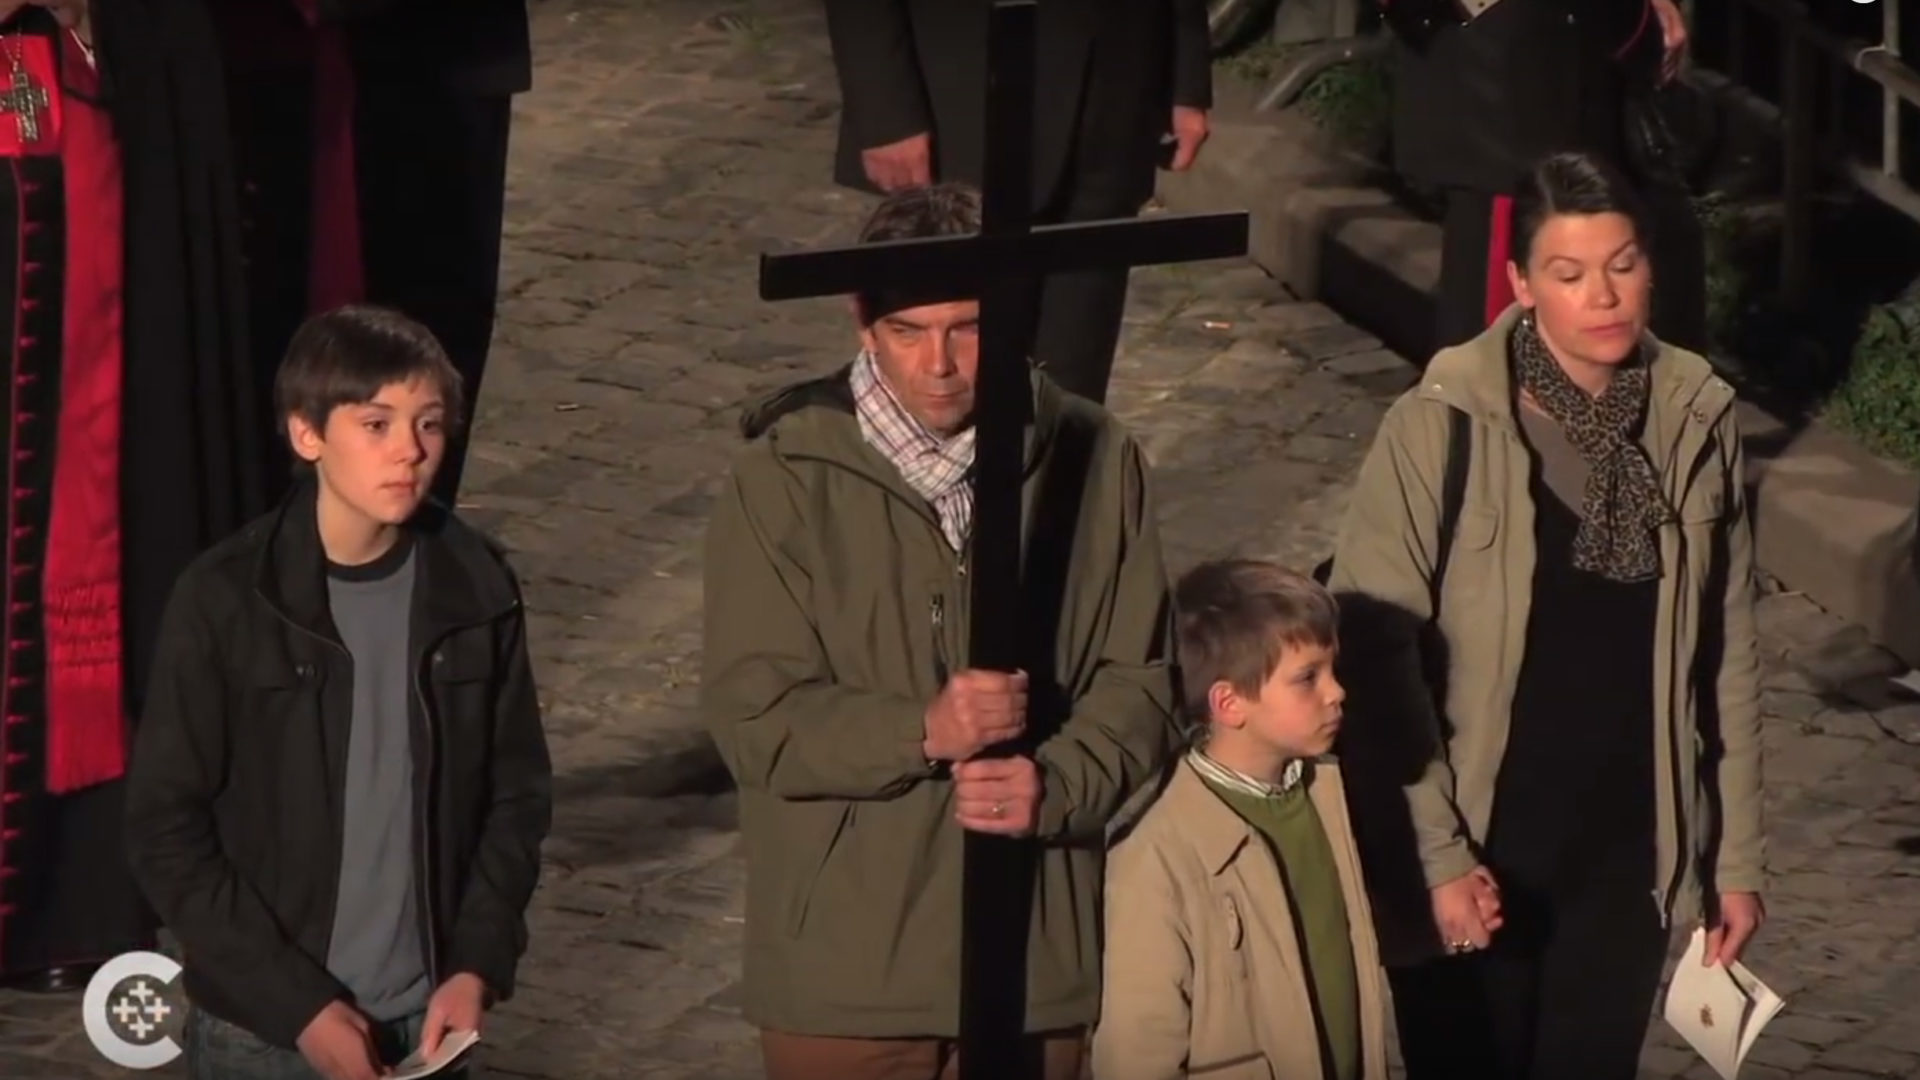 Des familles se relayent pour porter la croix lors de la 'Via crucis', comme ici en 2012 | Youtube - Catholic New service